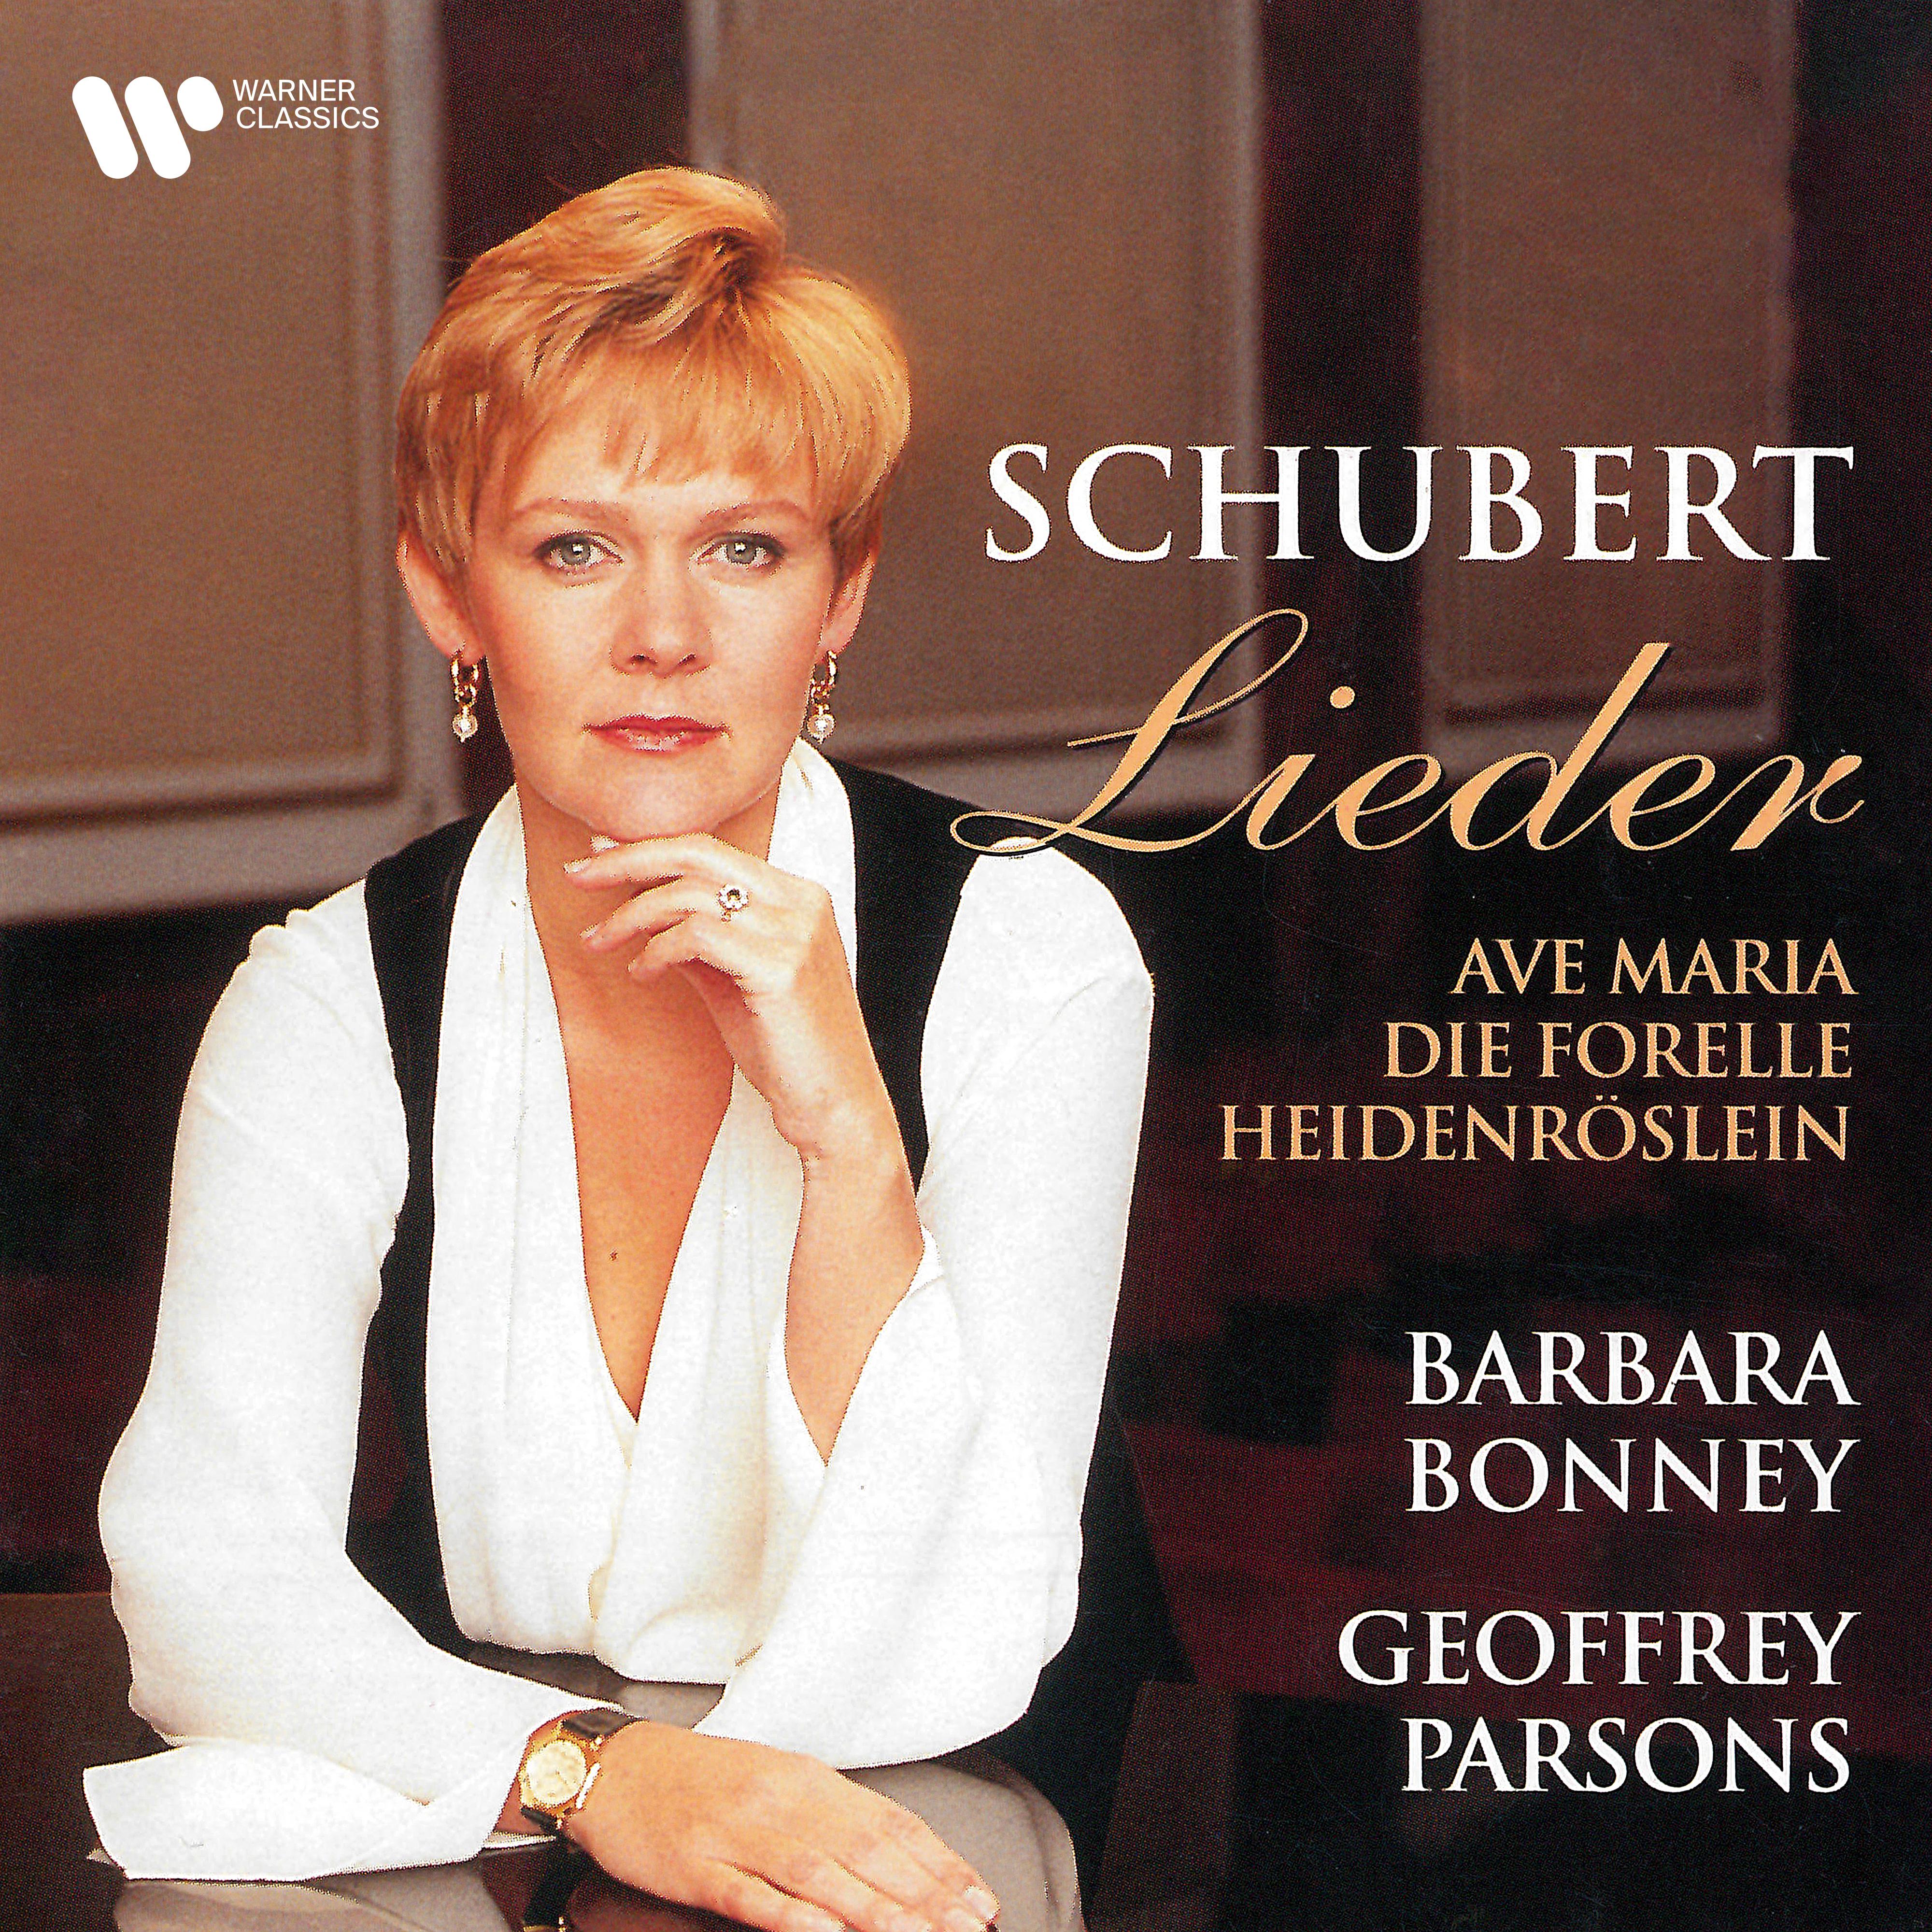 Schubert: Av Maria, Die Forelle, Heidenr slein  Other Lieder